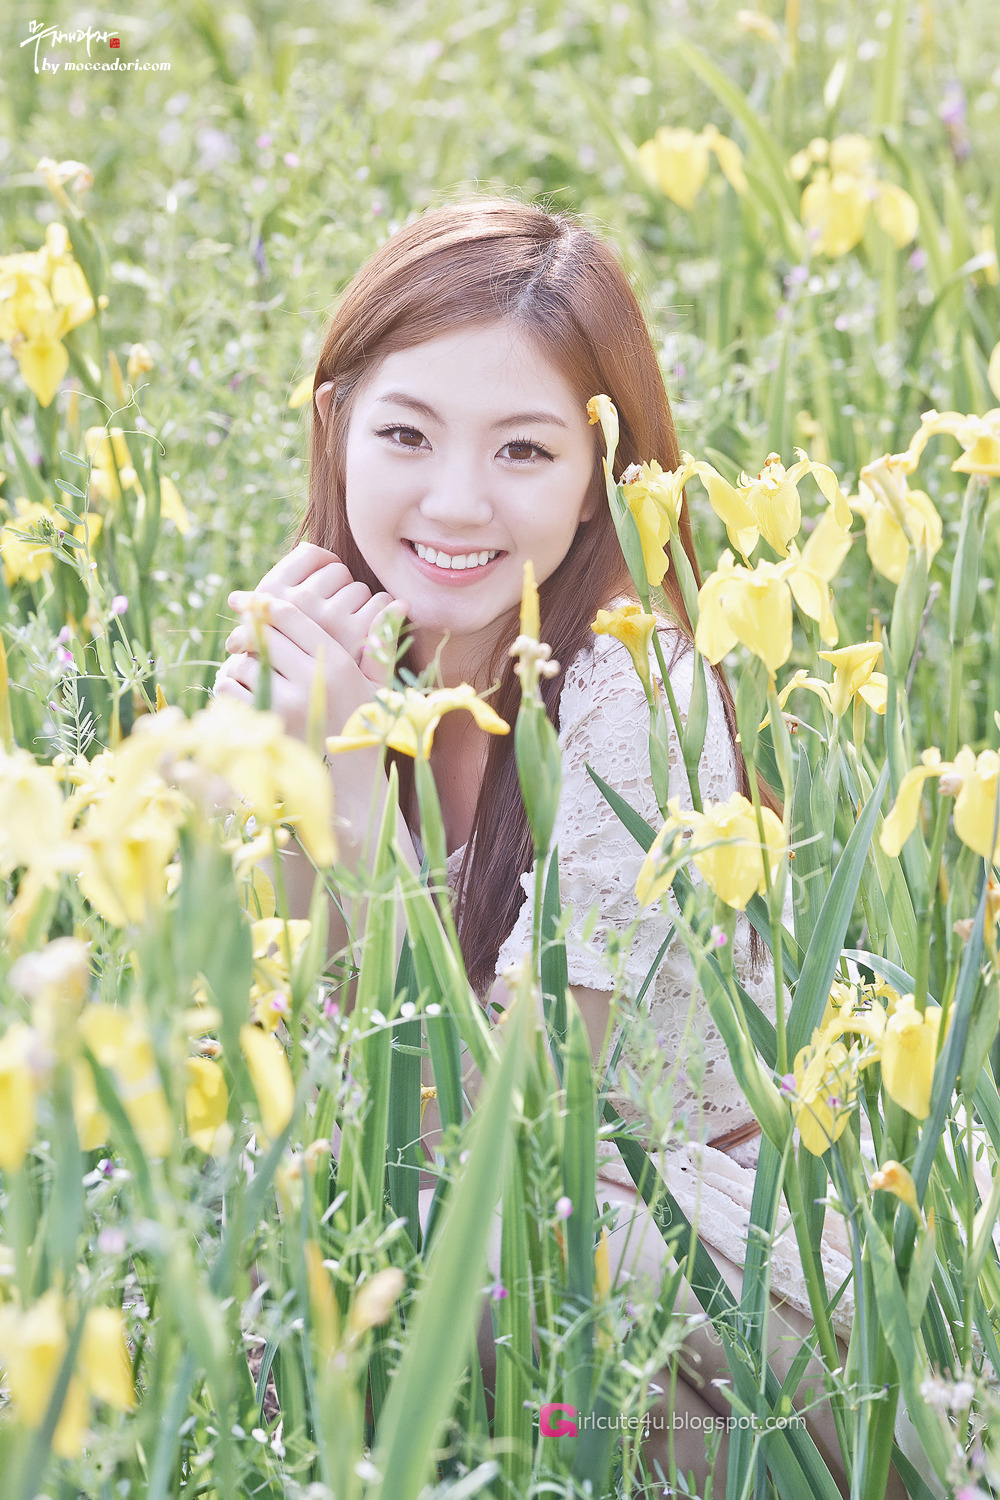 xxx nude girls: Chae Eun - Lovely Outdoor